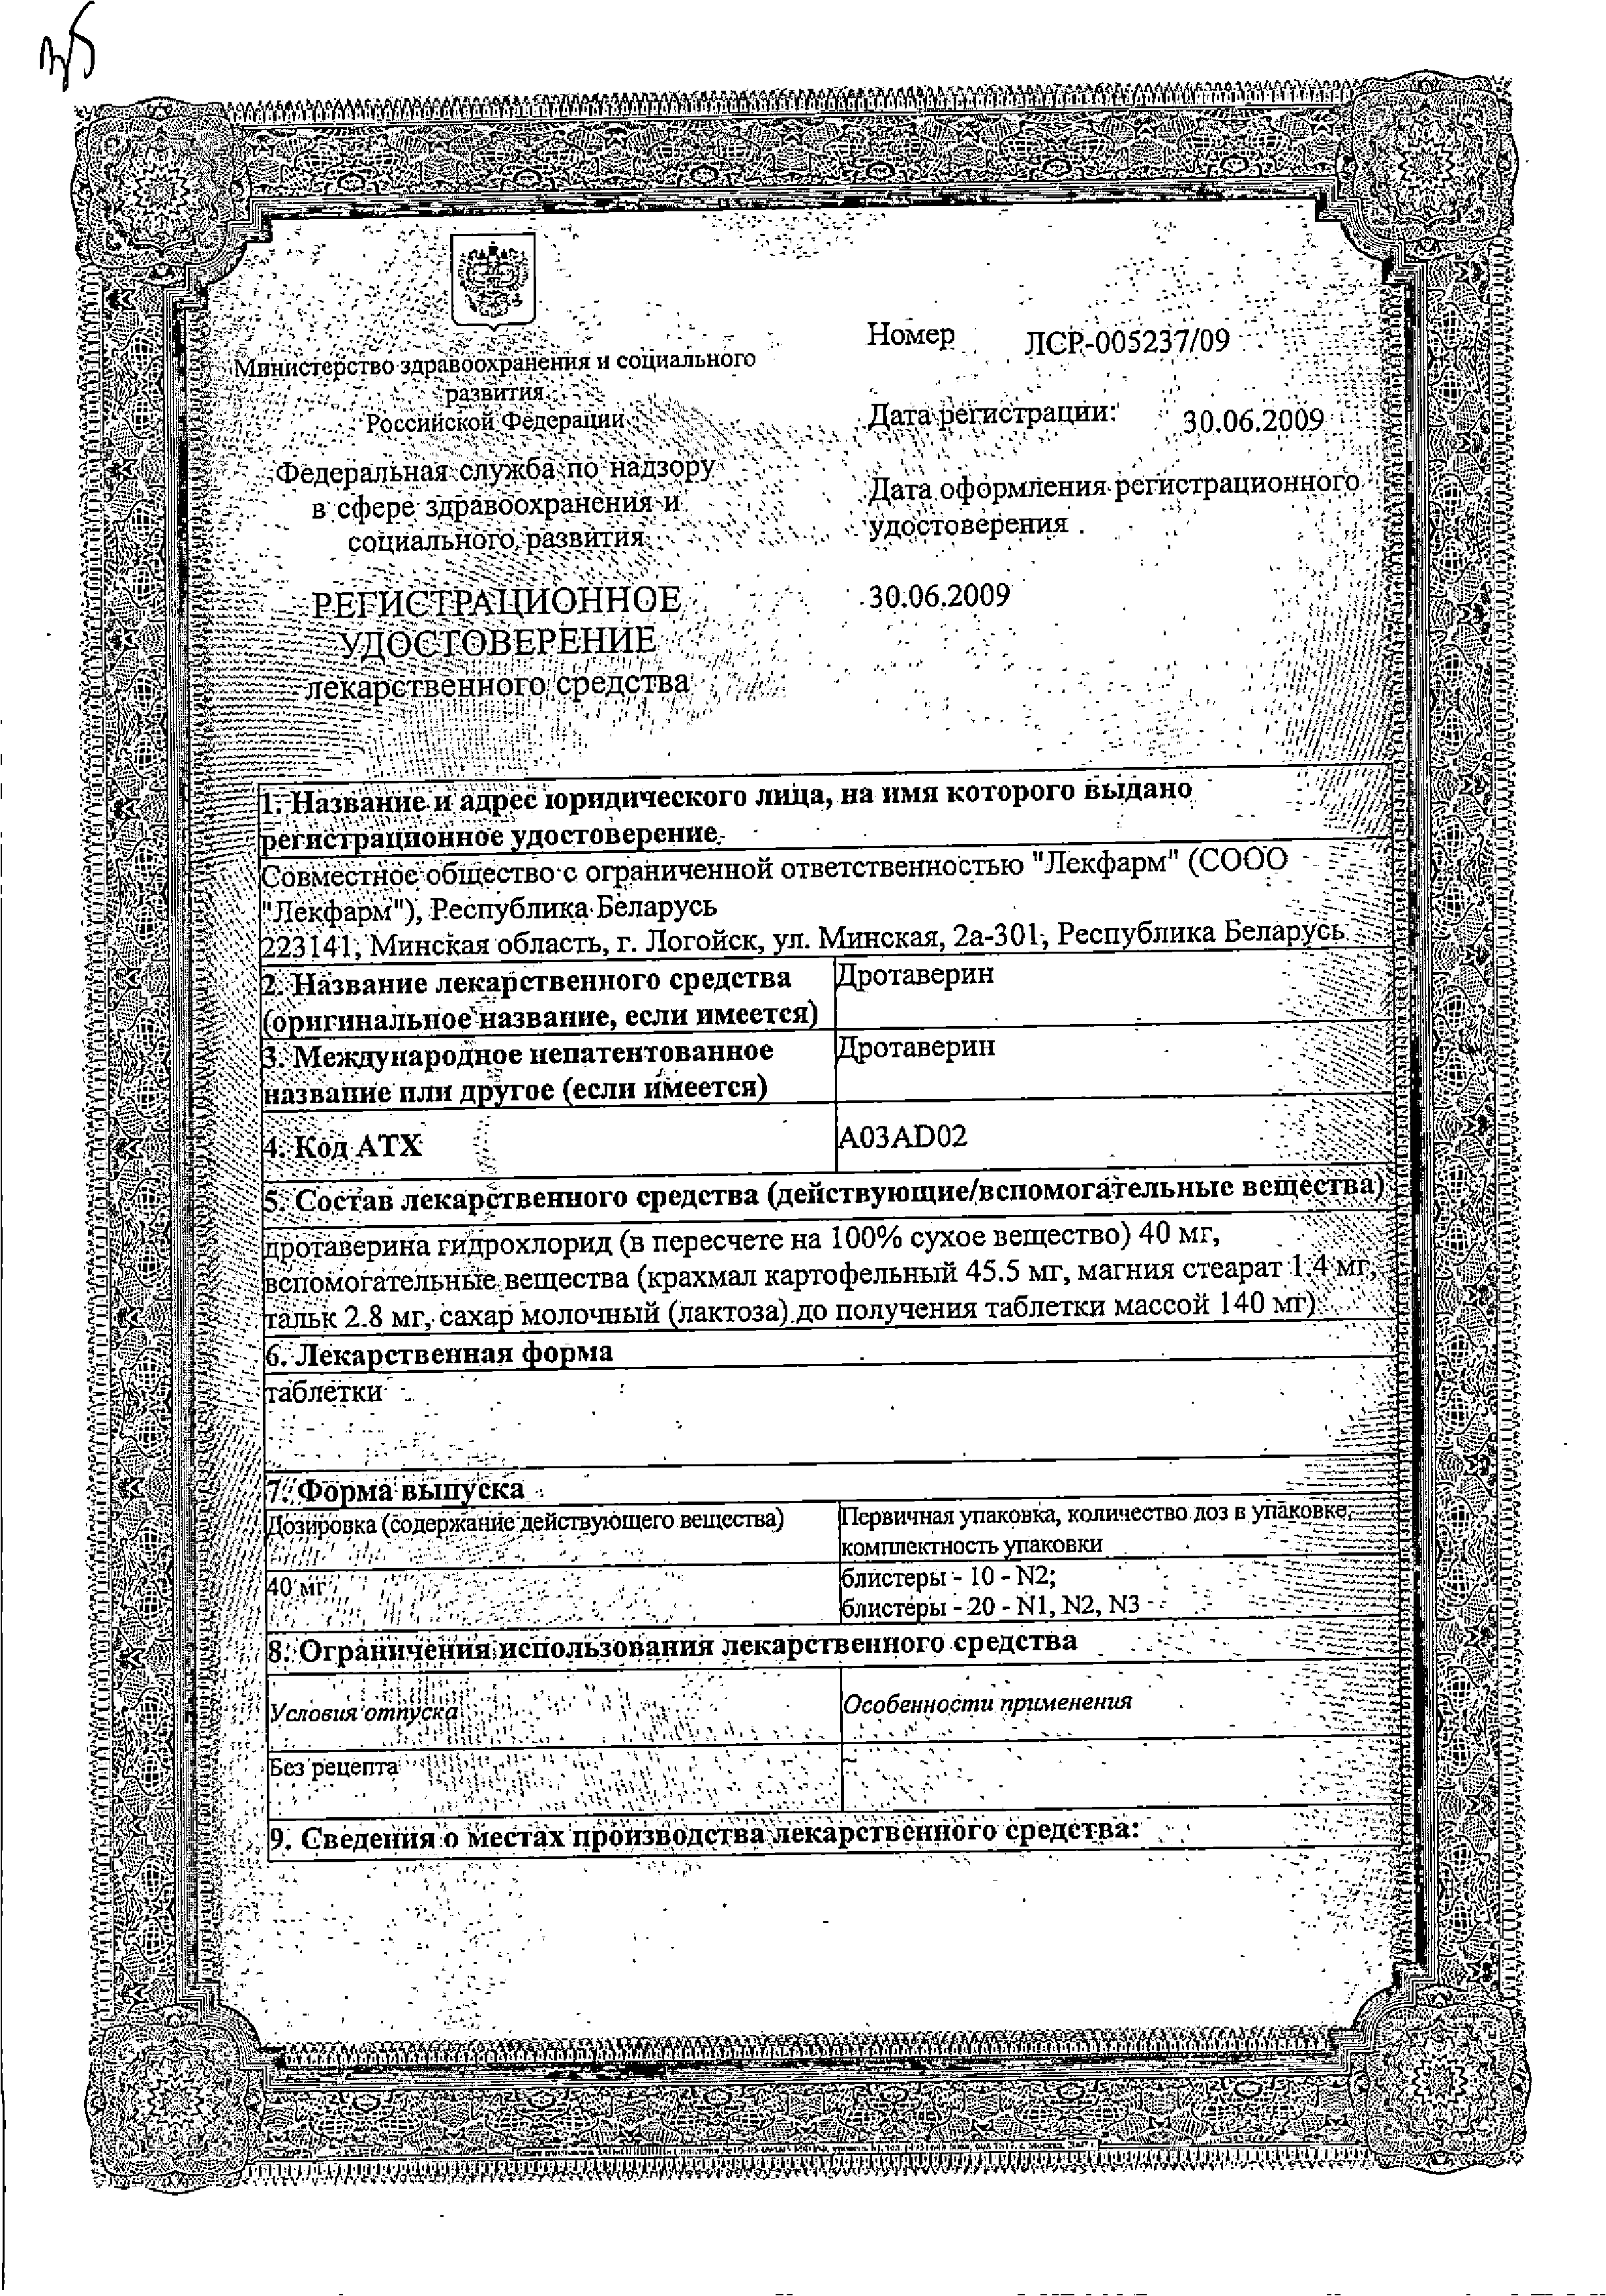 Дротаверин сертификат